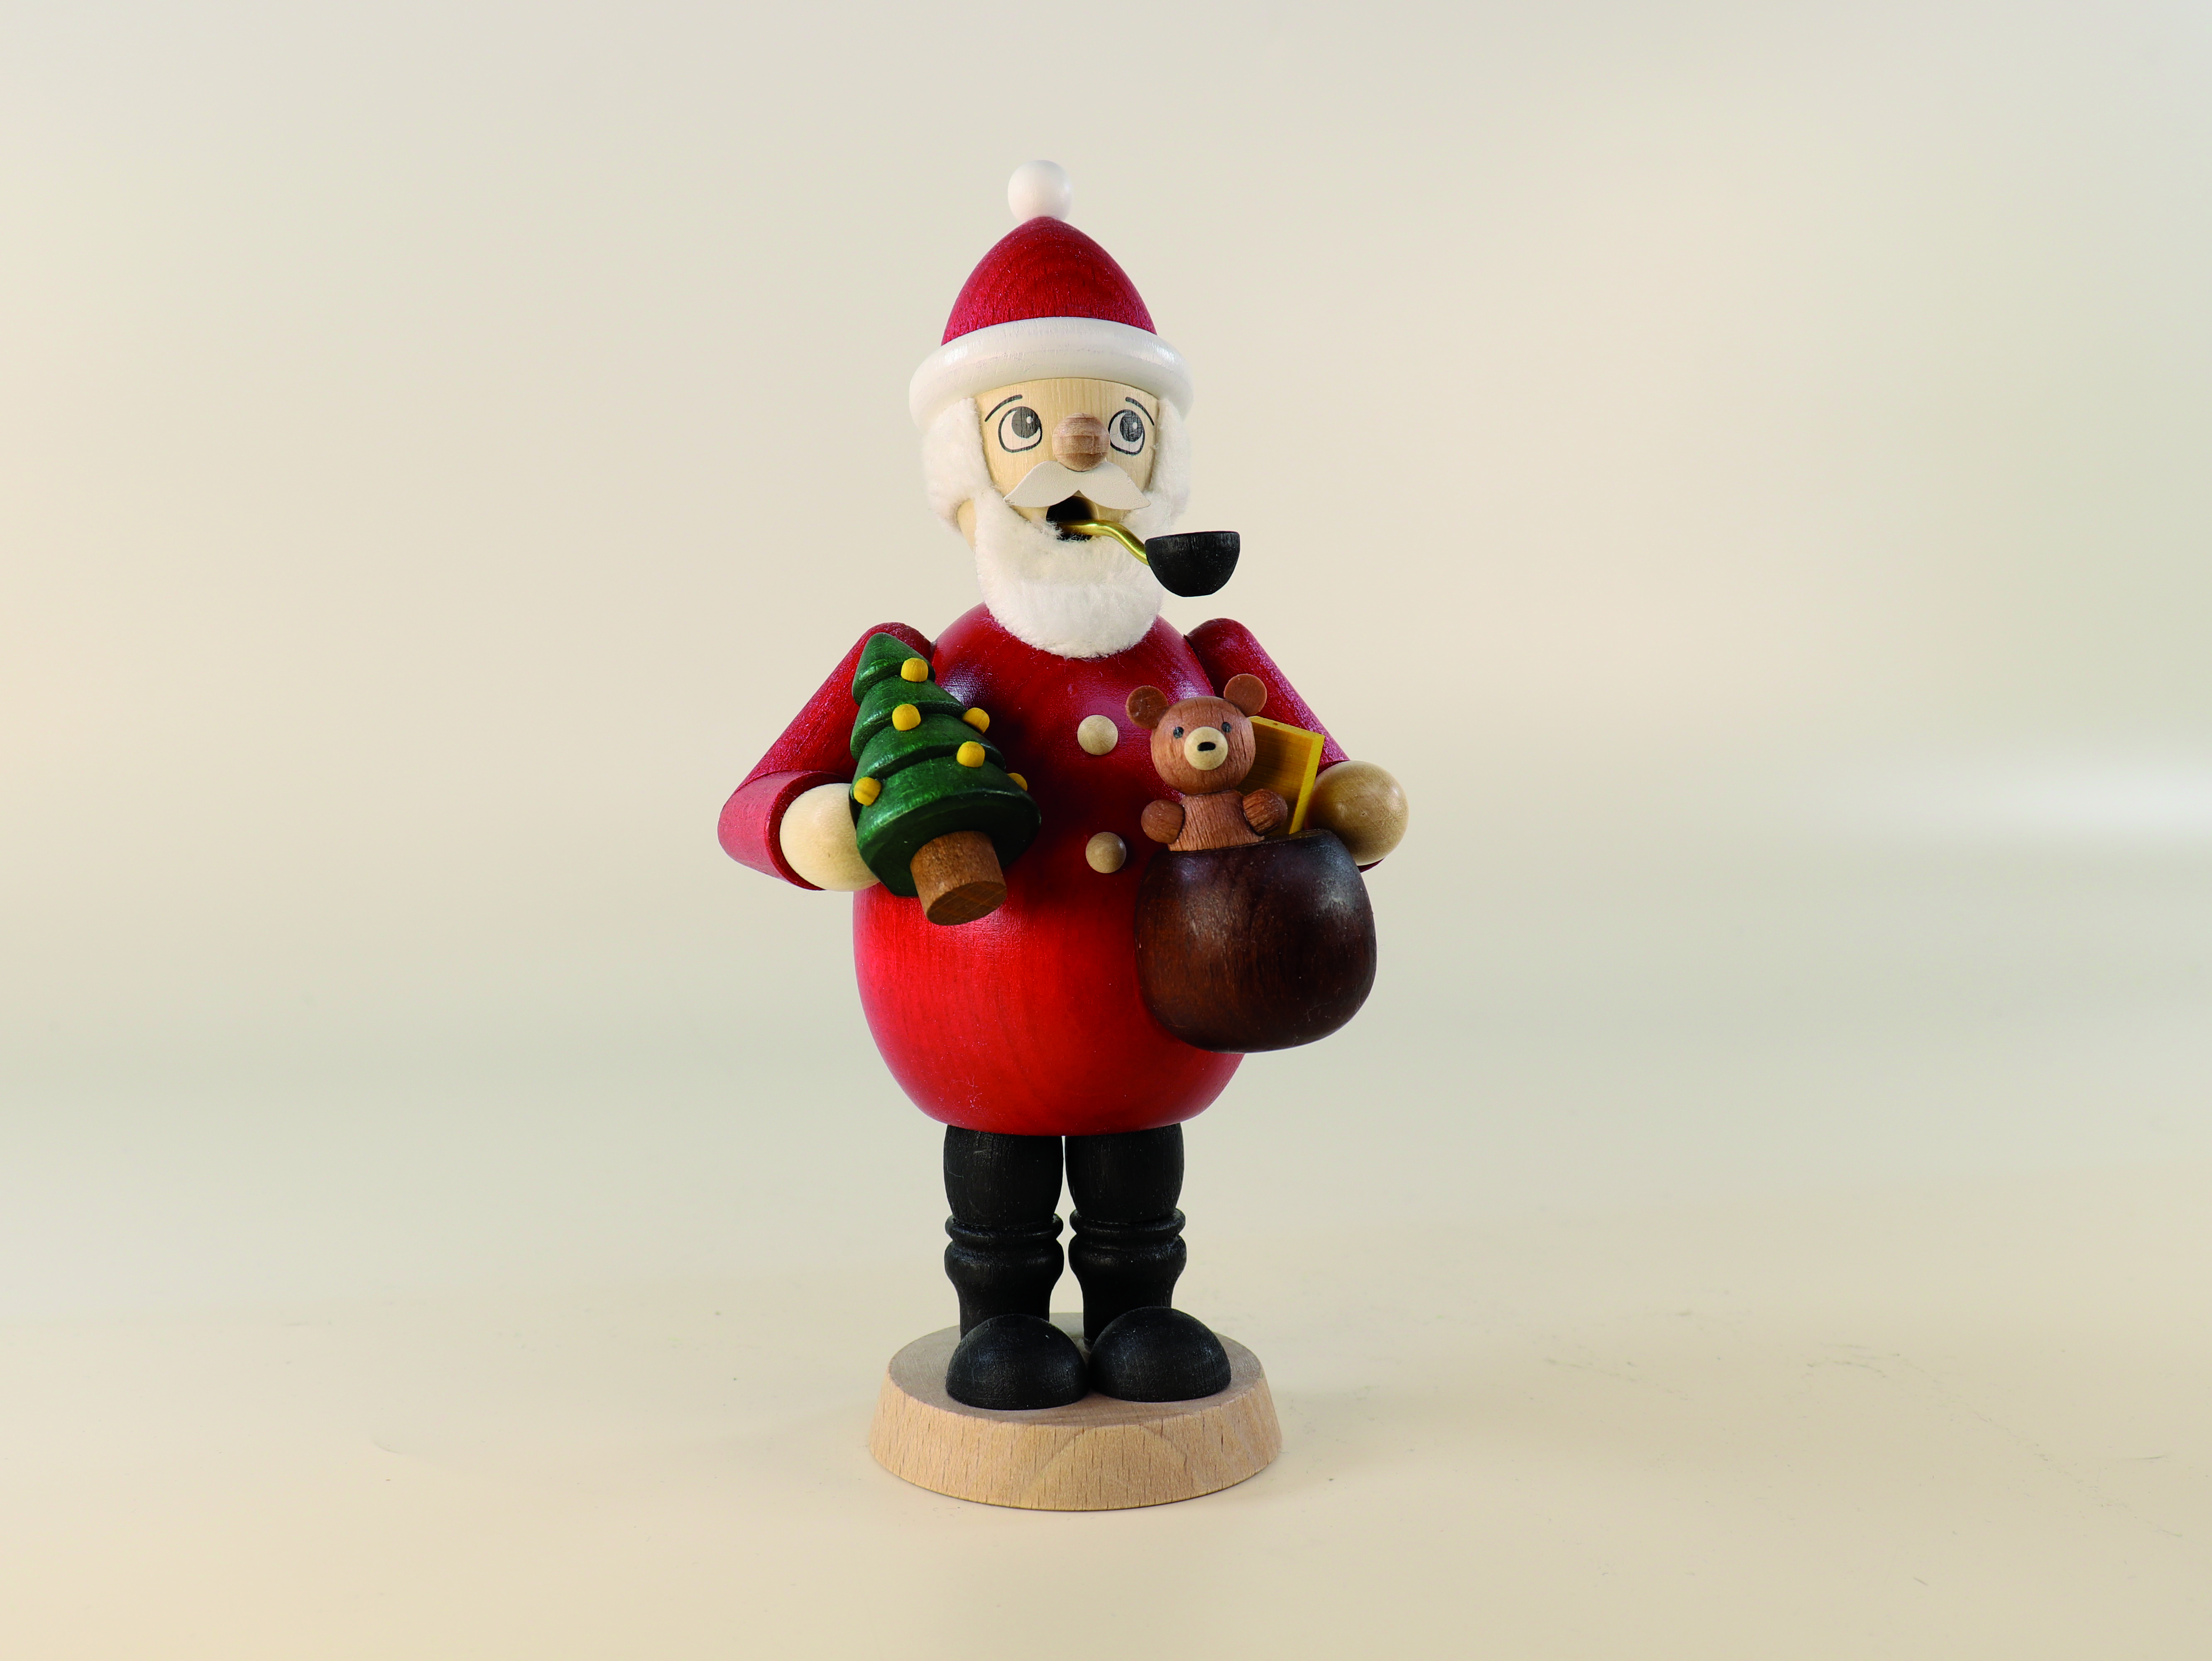 raeuchermann-weihnachtsmann-mit-sack-und-teddy-und-weihnachtsbaum-hoehe-ca.-170cm-10-ullrich-kunsthandwerk-paul-ullrich-volkskunstbestehen